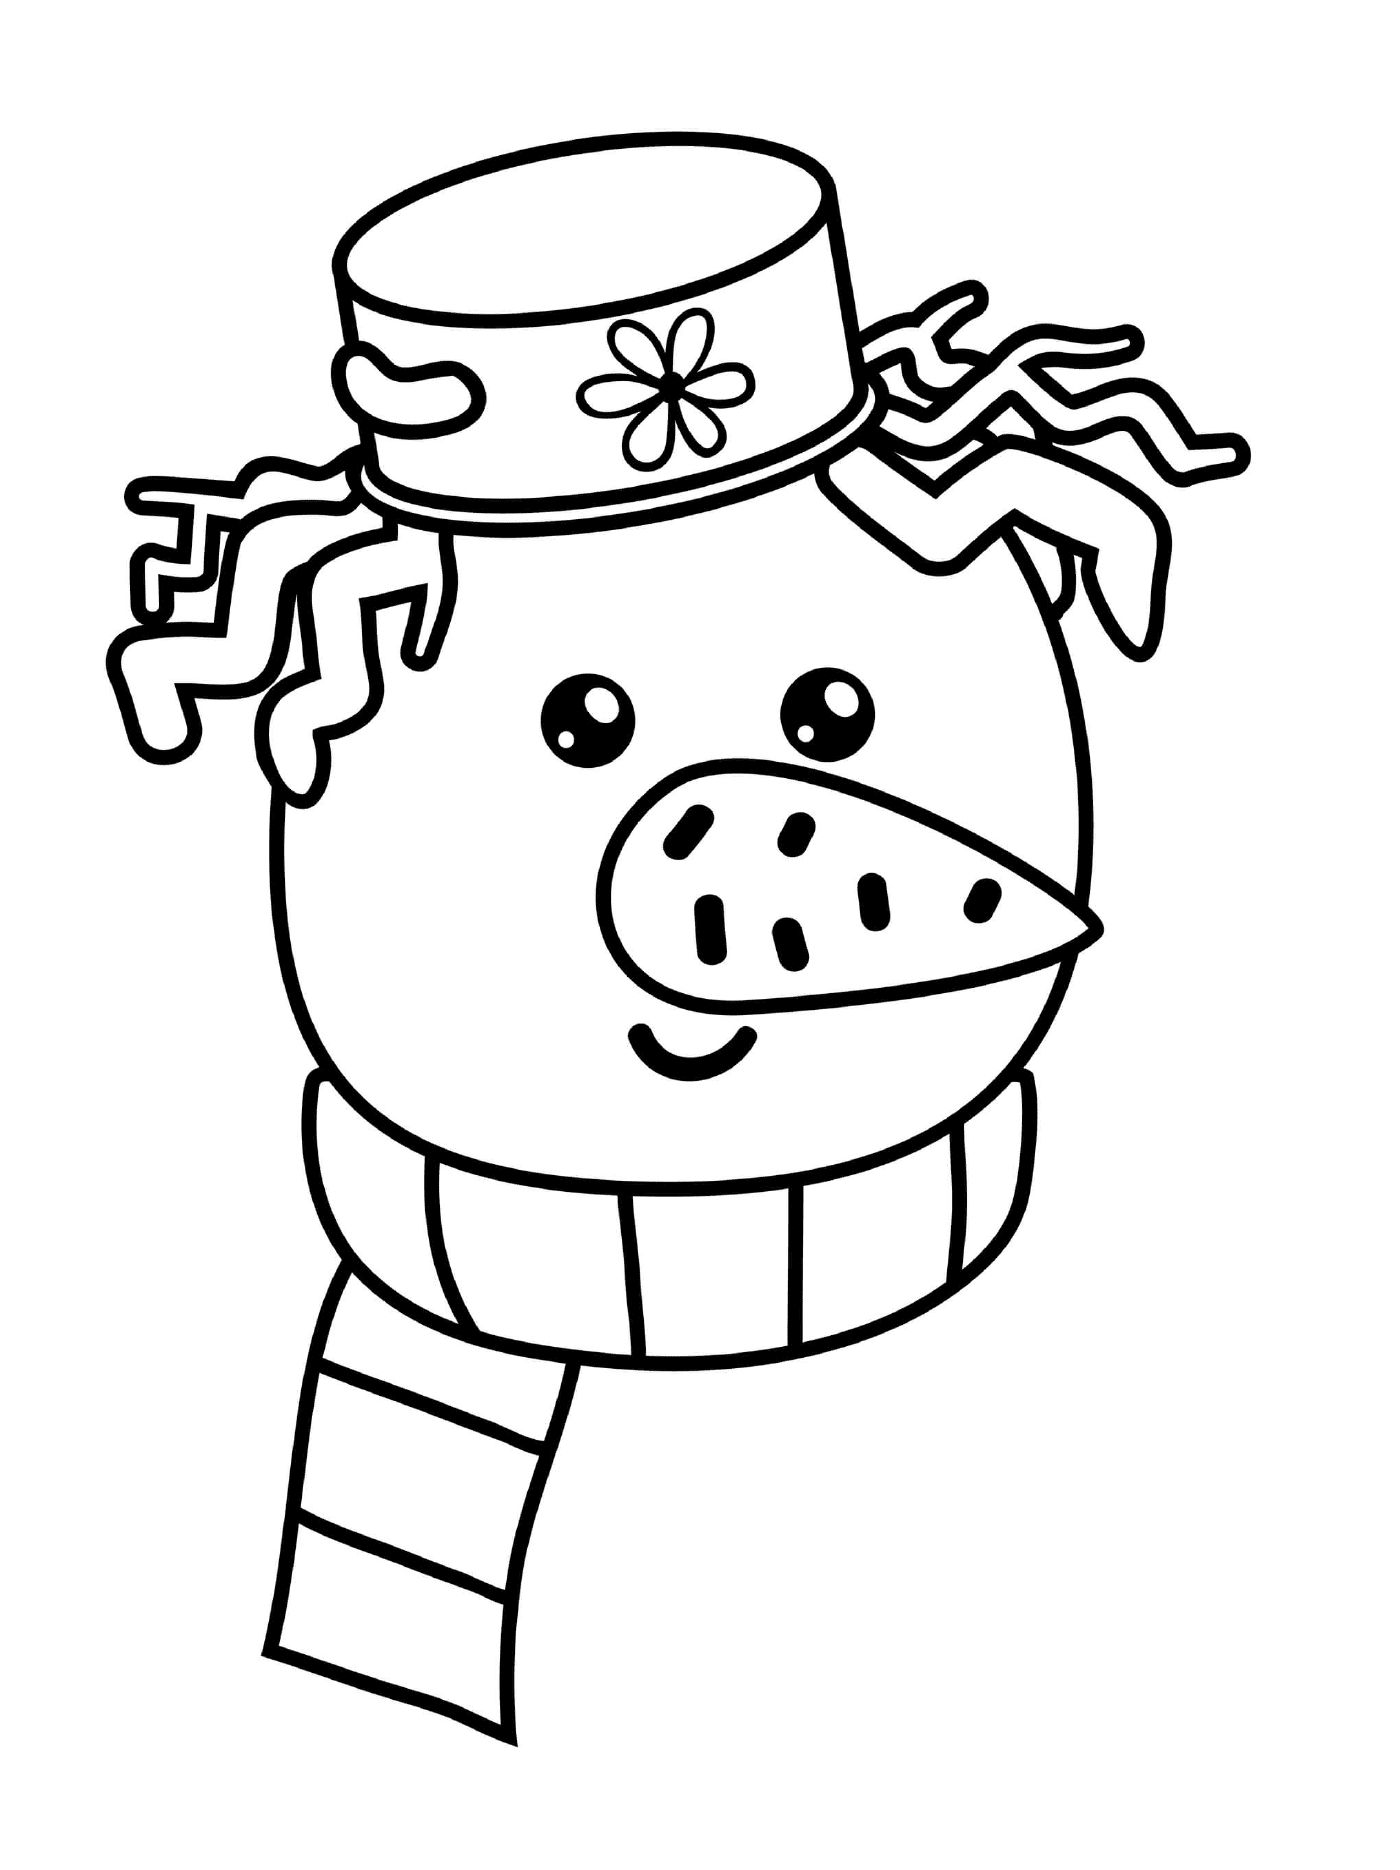  Голова снеговика с шляпой и шарфом 